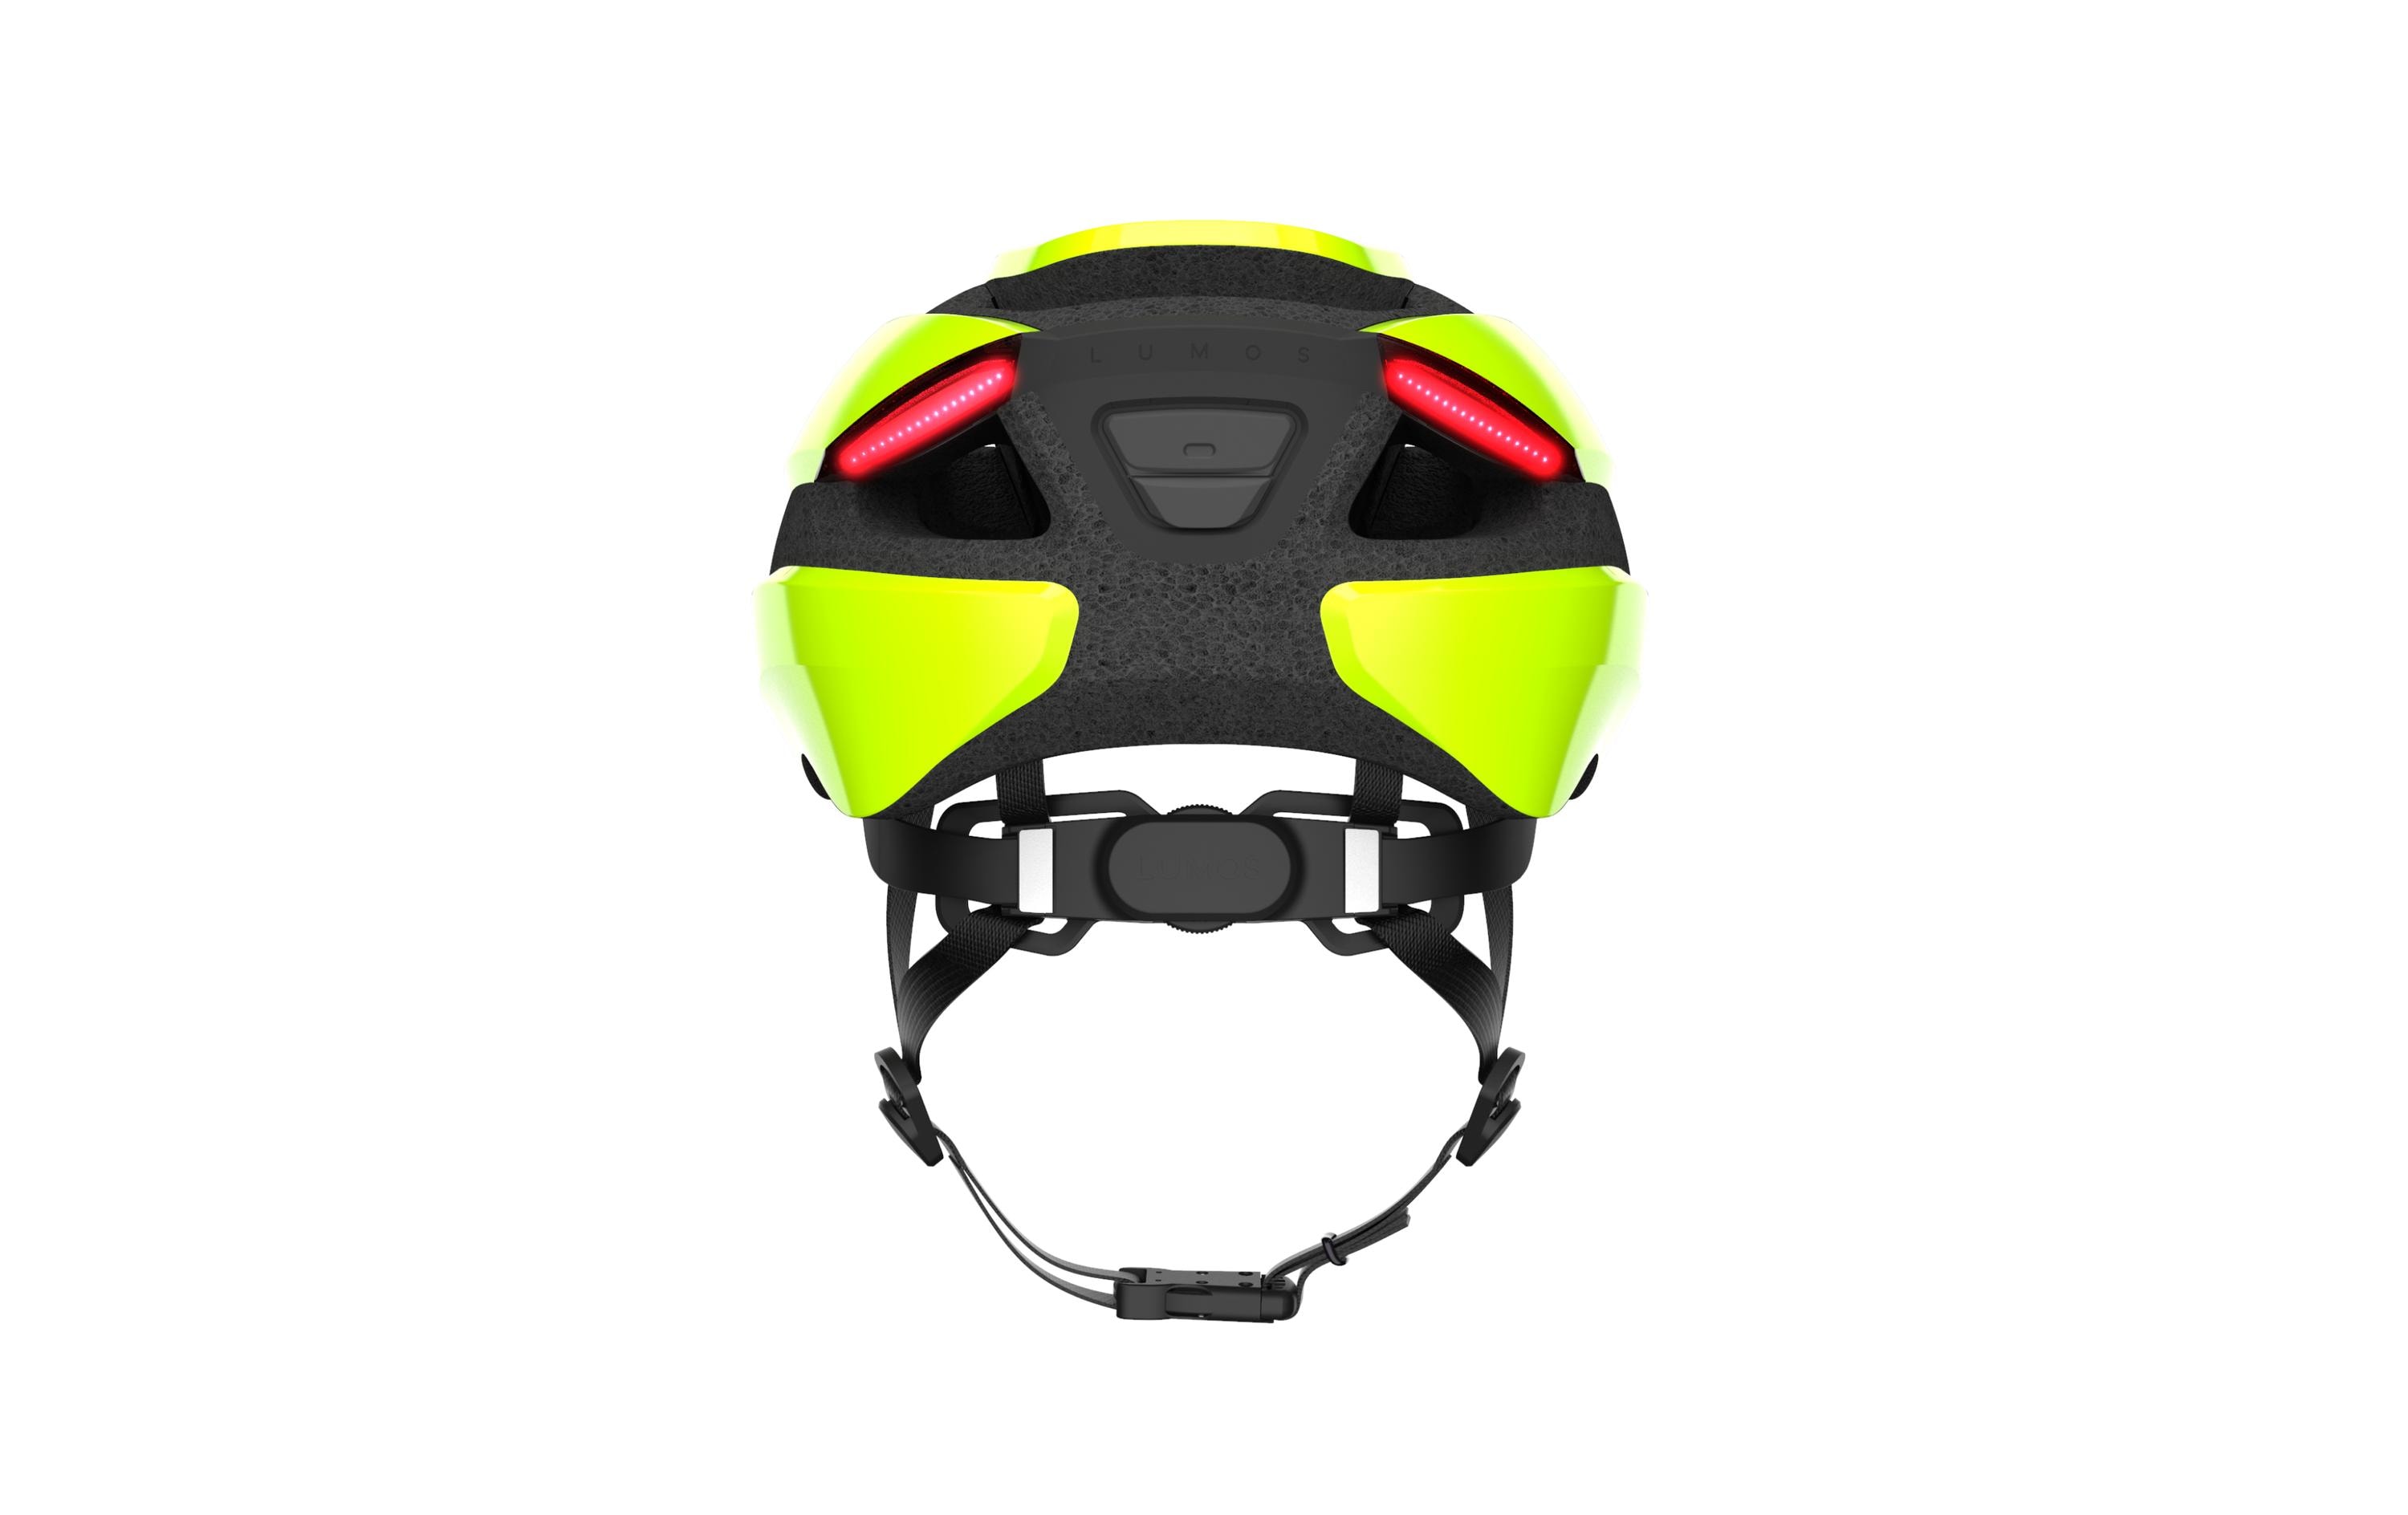 LUMOS Helm Ultra 54-61 cm, Lime